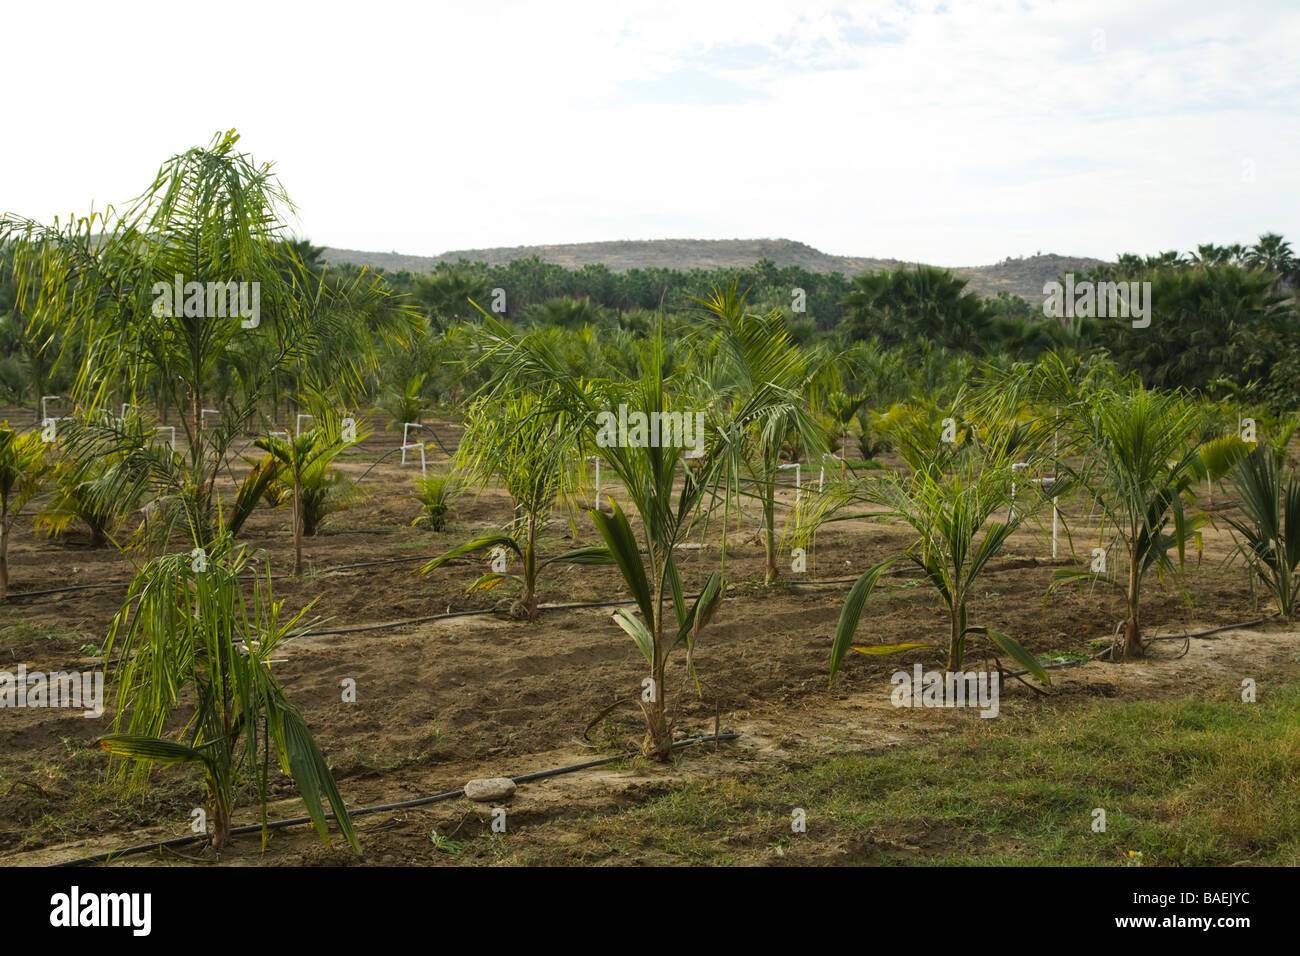 Messico Todos Santos righe delle superfici irrigate palme in crescita in vivaio campo Sierra Laguna montagne in distanza Foto Stock